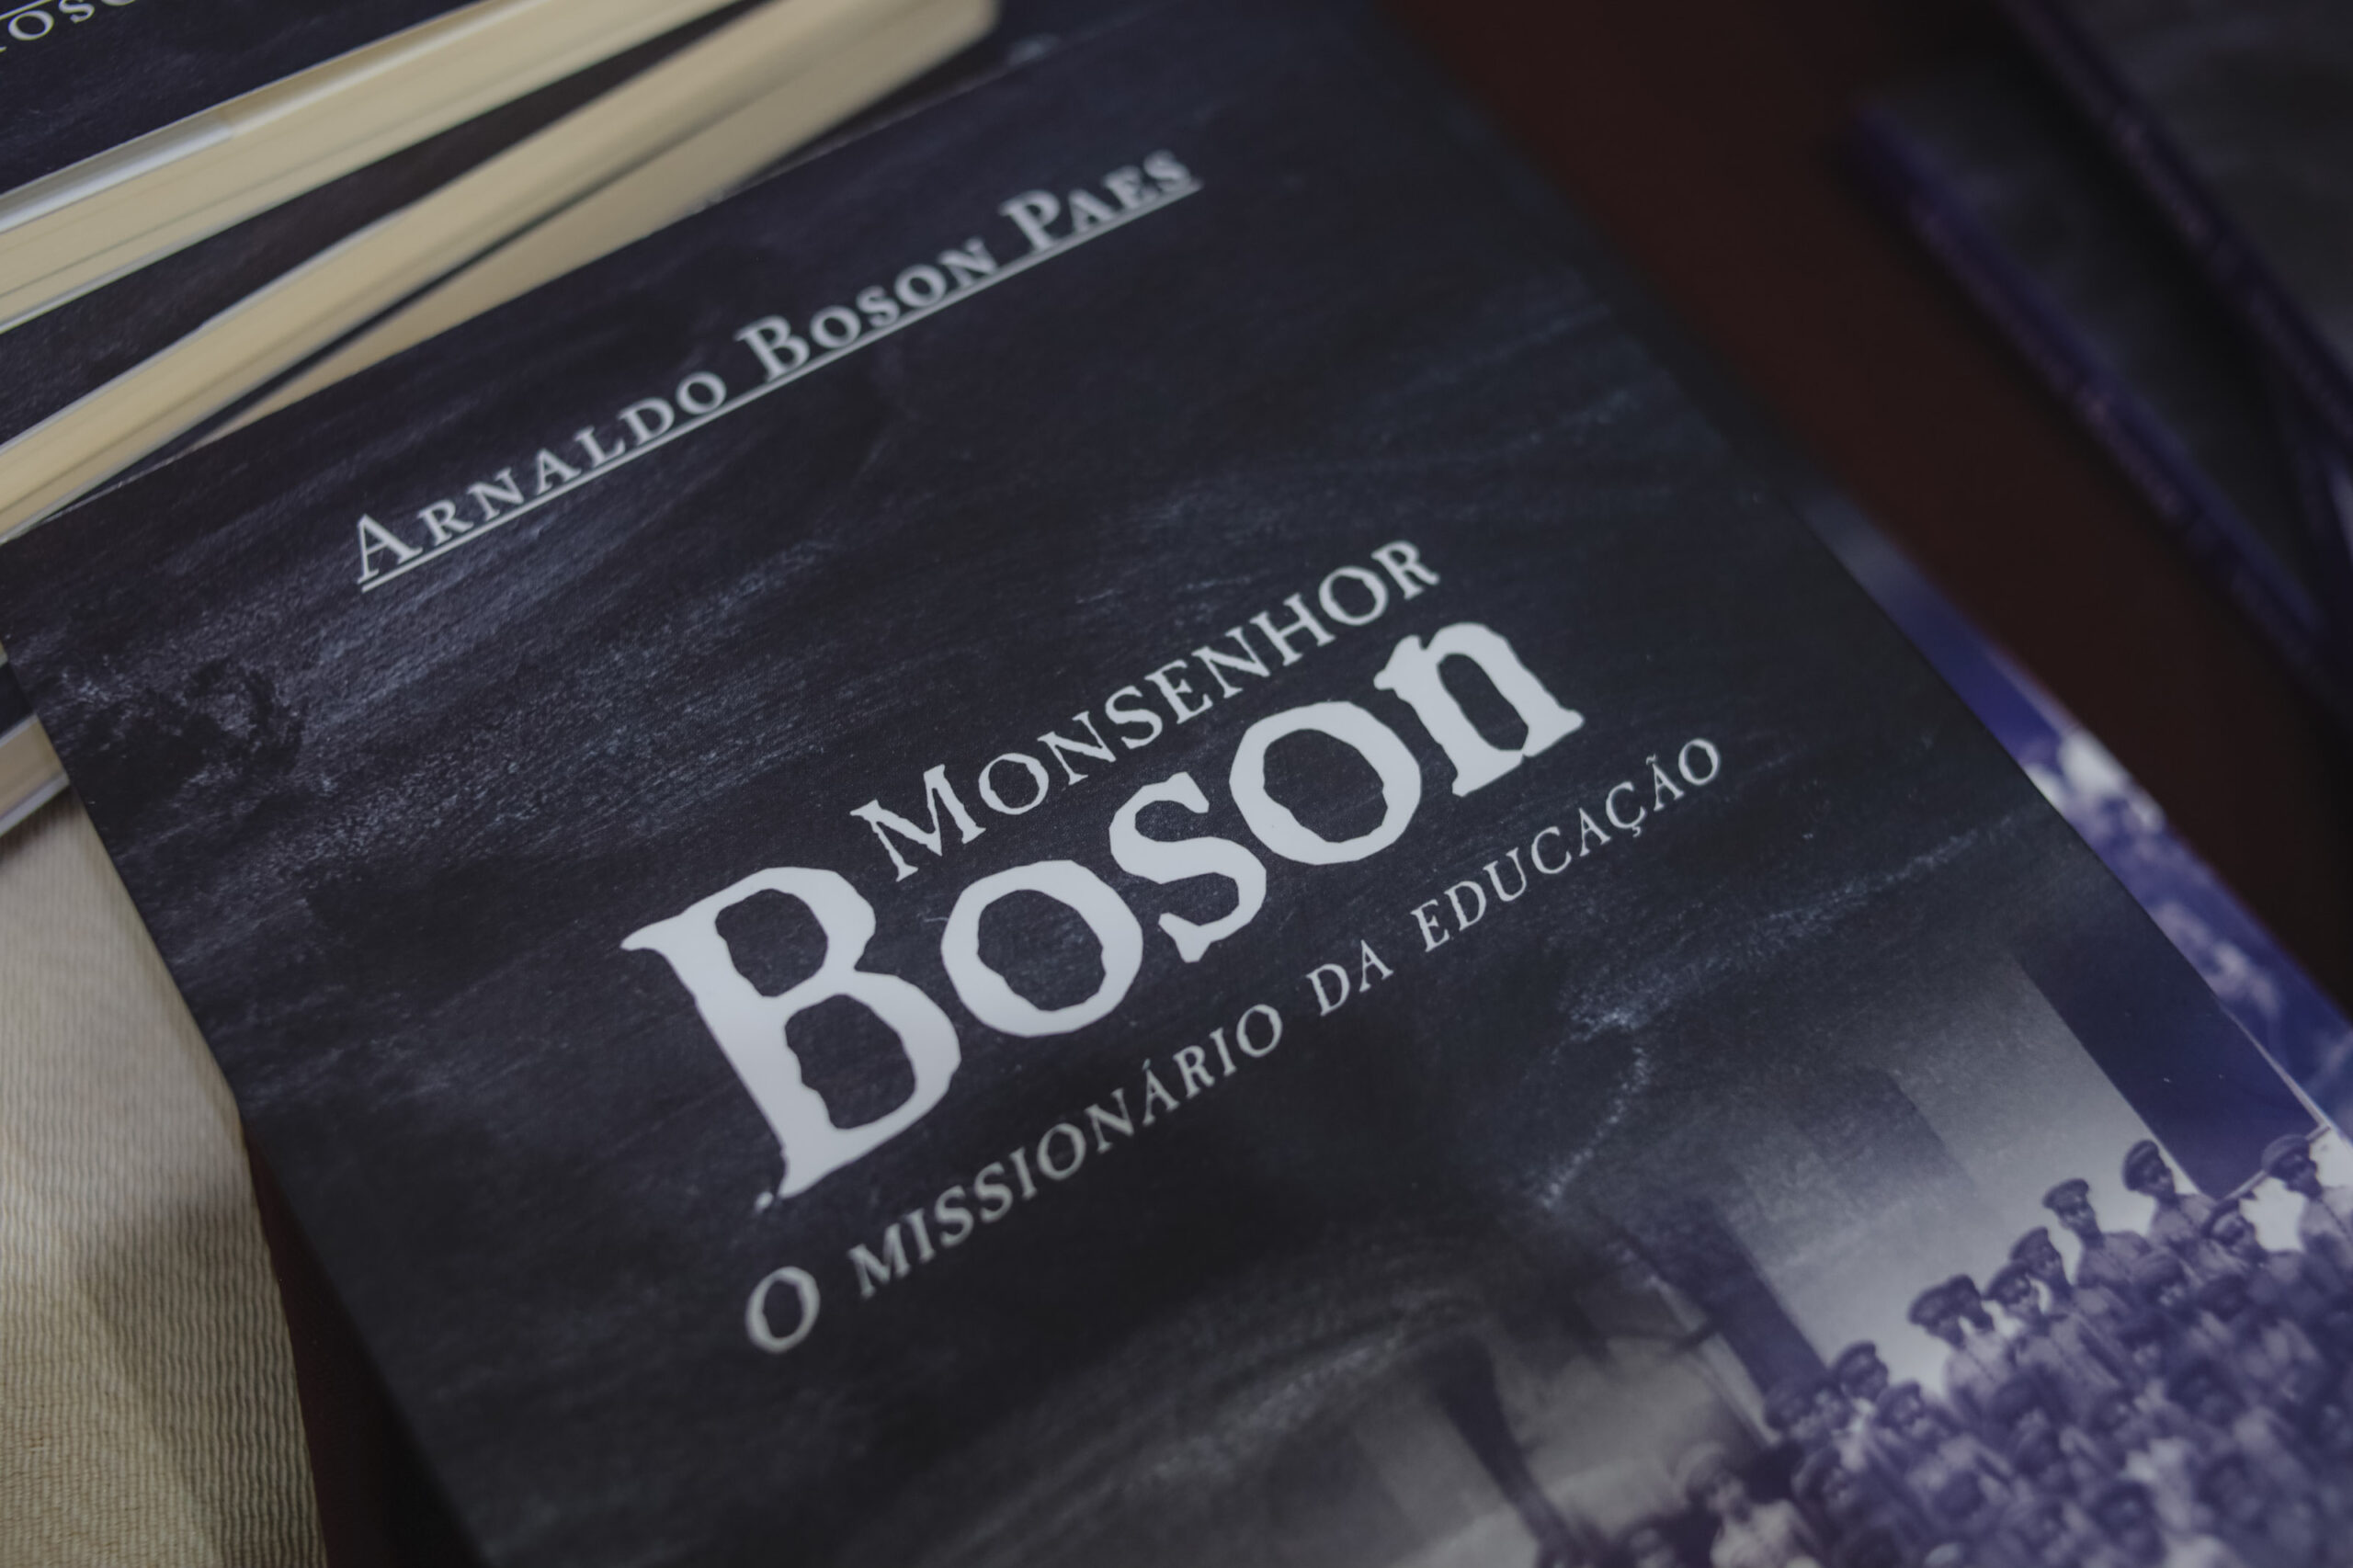 Biografia do Monsenhor Boson/Imagens: Jairo Moura.